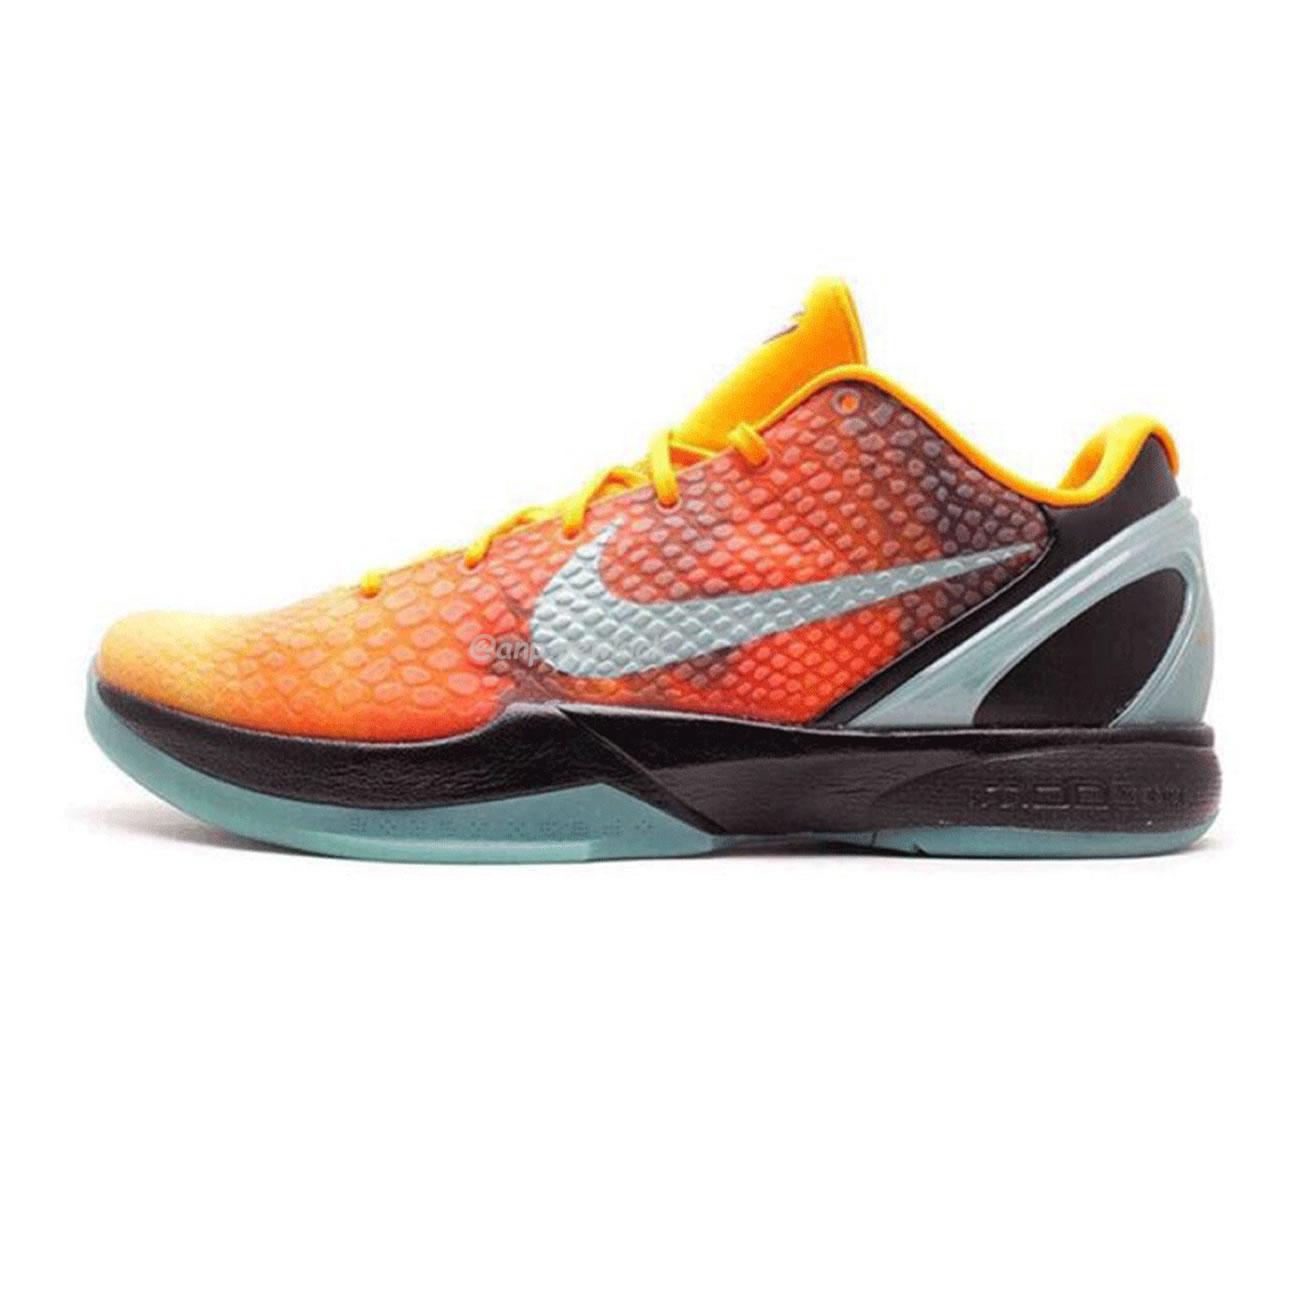 Nike Kobe 6 “Orange County” CW2190-800